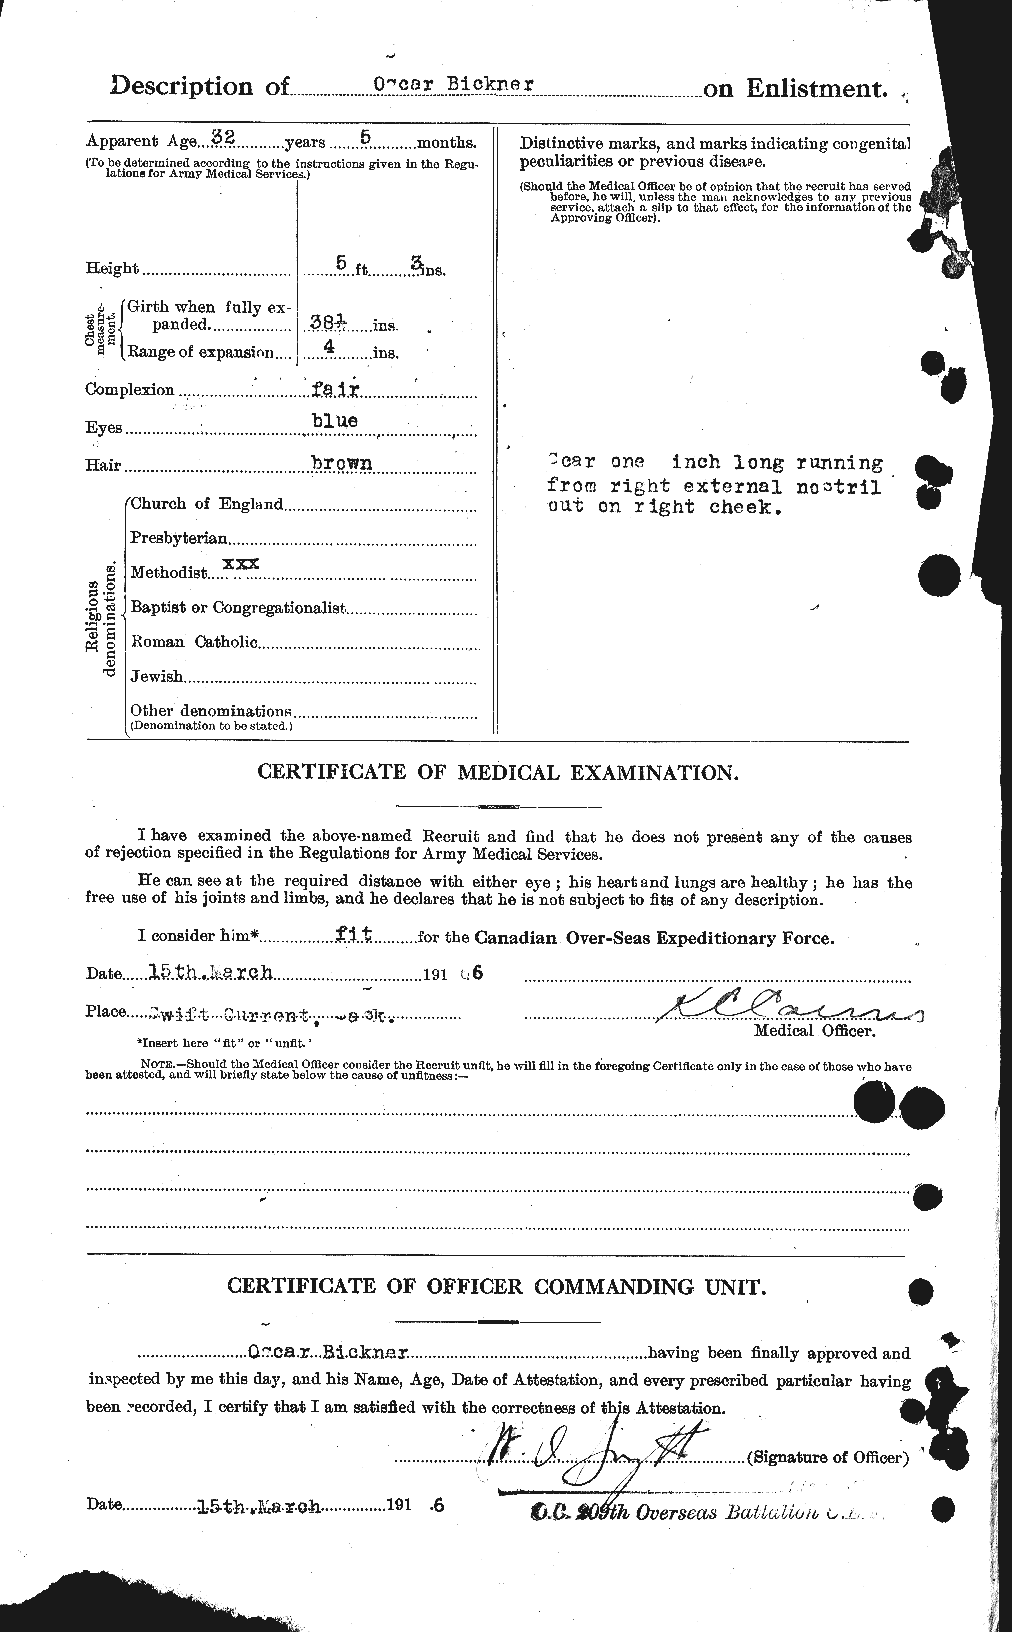 Dossiers du Personnel de la Première Guerre mondiale - CEC 244858b